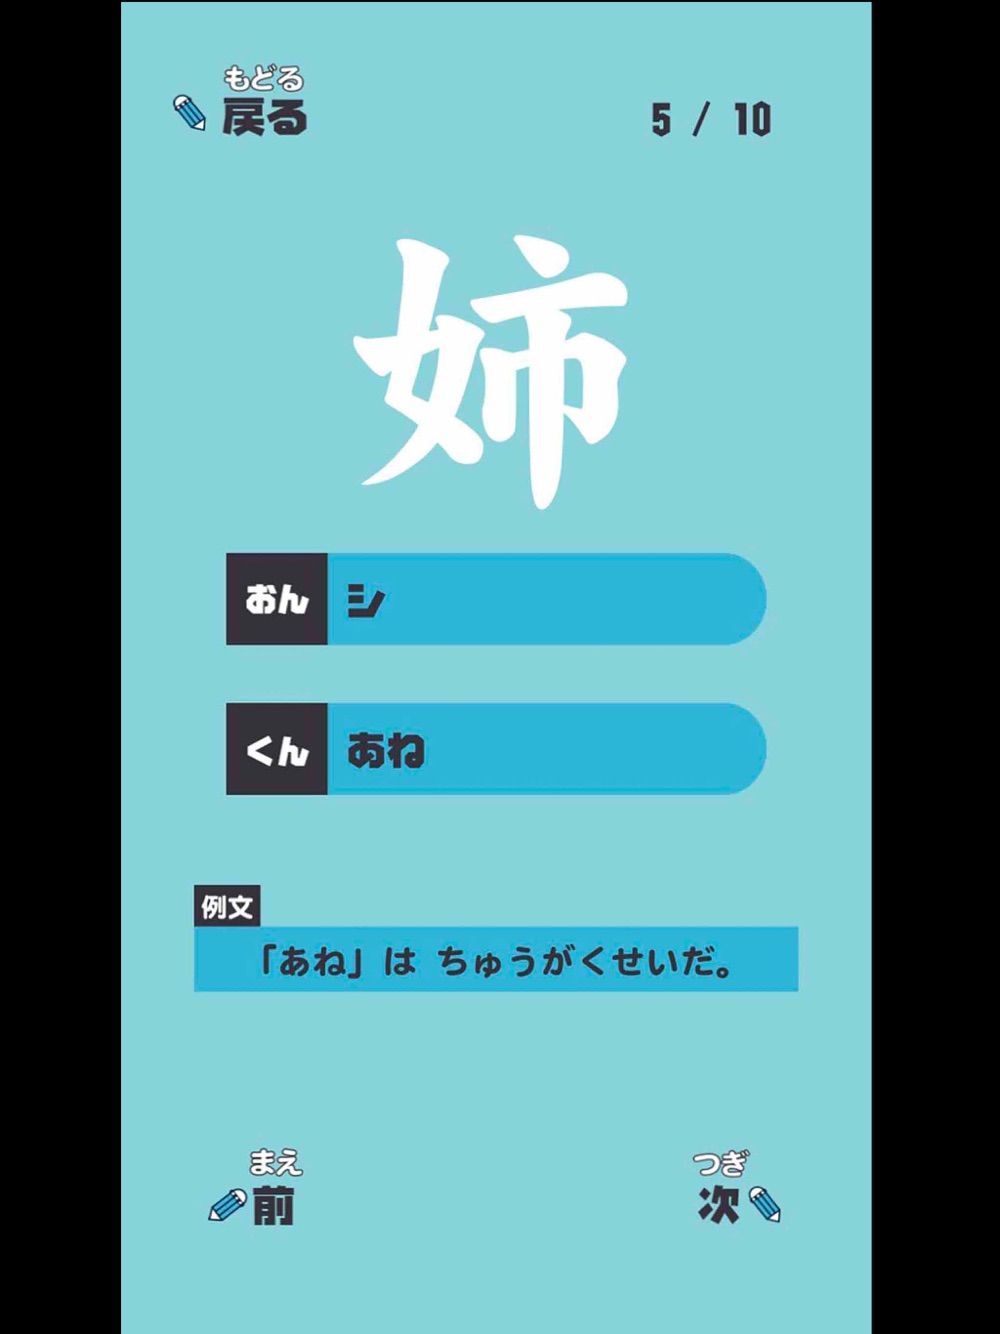 にねんせいの漢字 小学二年生 小2 向け漢字勉強アプリ Free Download App For Iphone Steprimo Com